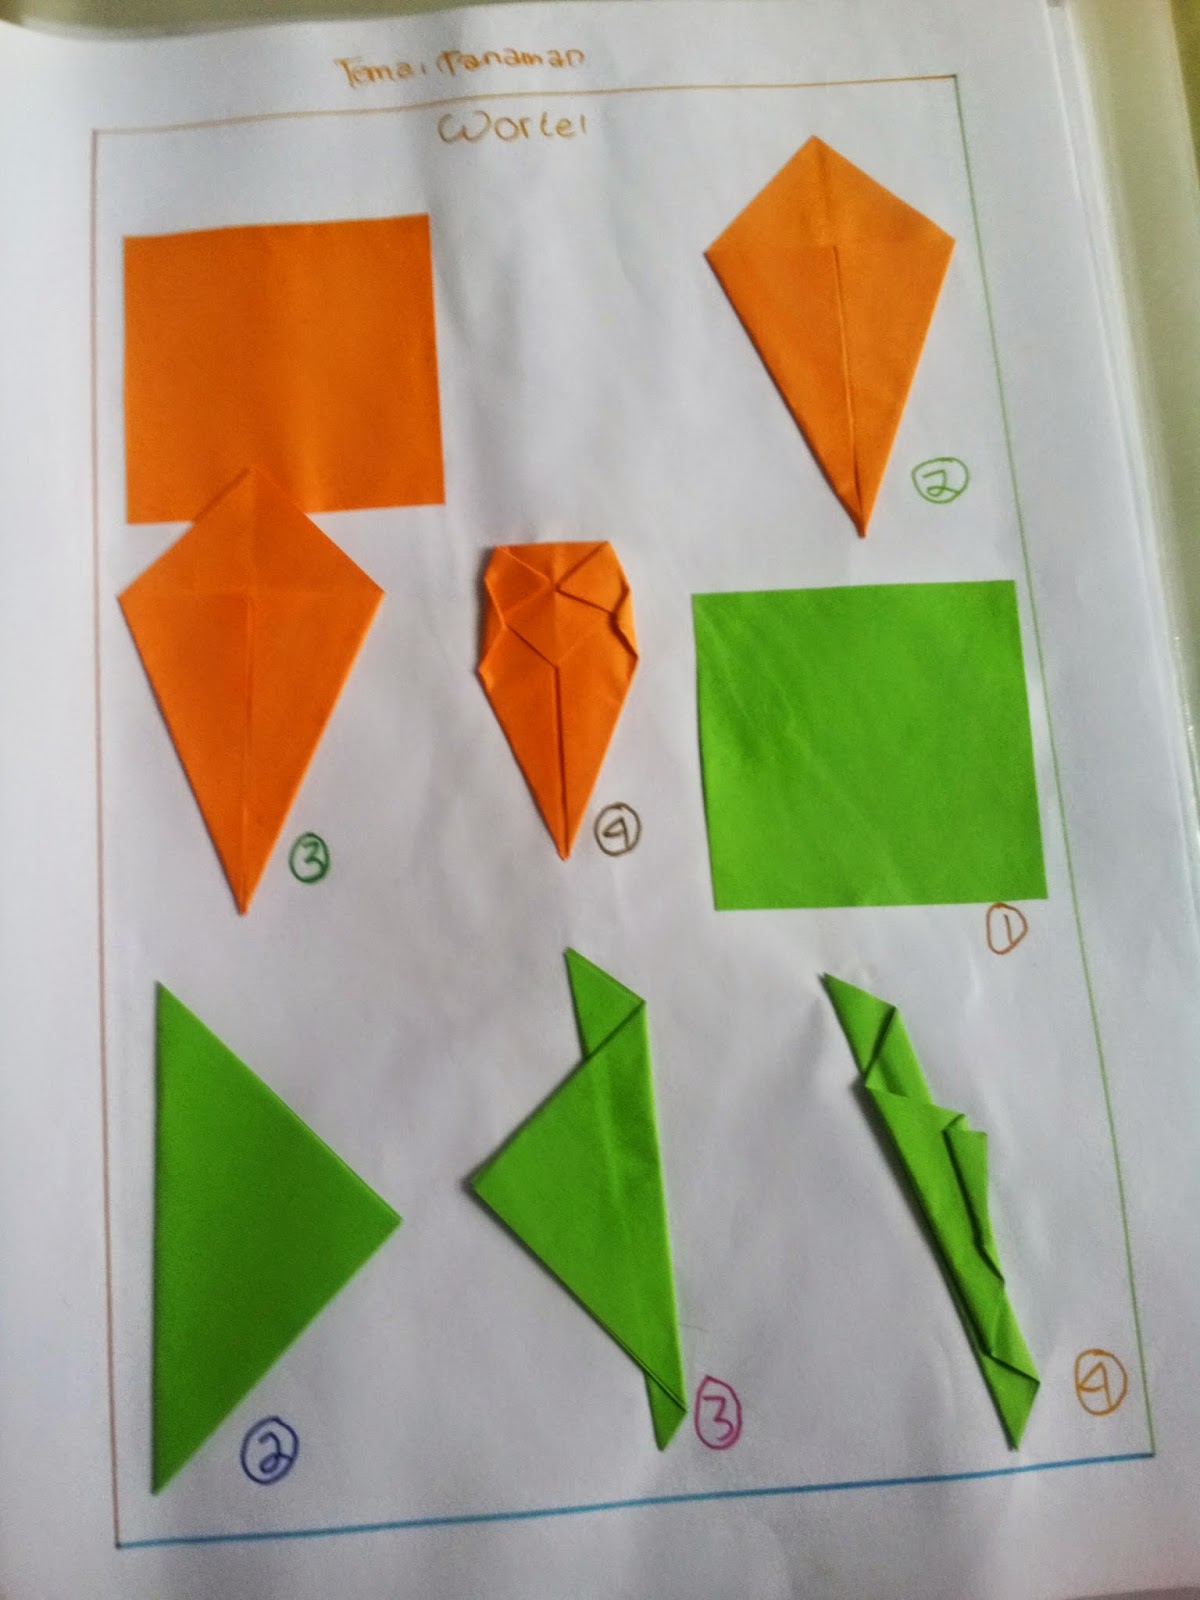 Rahmi Syah Putri Cara Cara Melipat Origami Sesuai Dengan